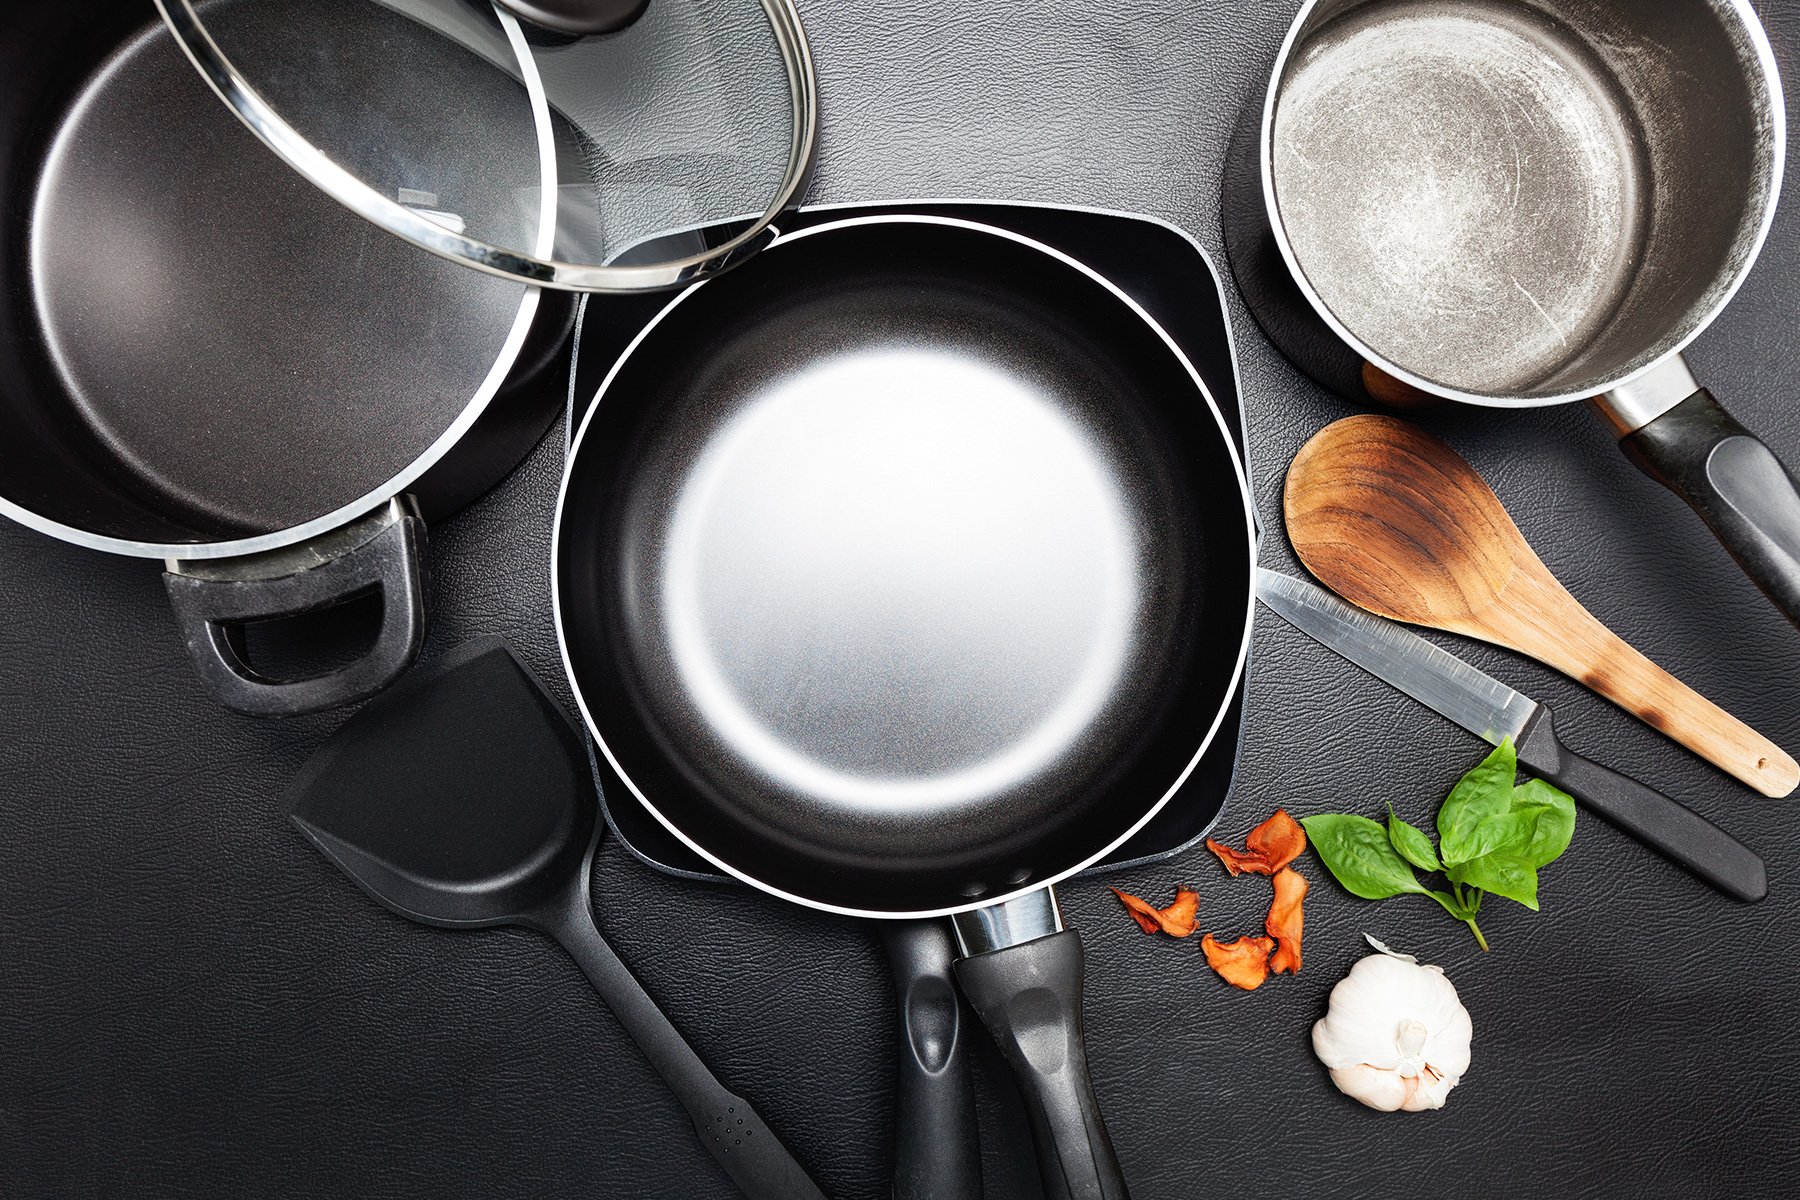 https://www.samtell.com/hs-fs/hubfs/Blogs/SamTell-Blog-Chef's-Guide-to-Commercial-Grade-Professional-Cookware.jpg?width=1800&name=SamTell-Blog-Chef's-Guide-to-Commercial-Grade-Professional-Cookware.jpg